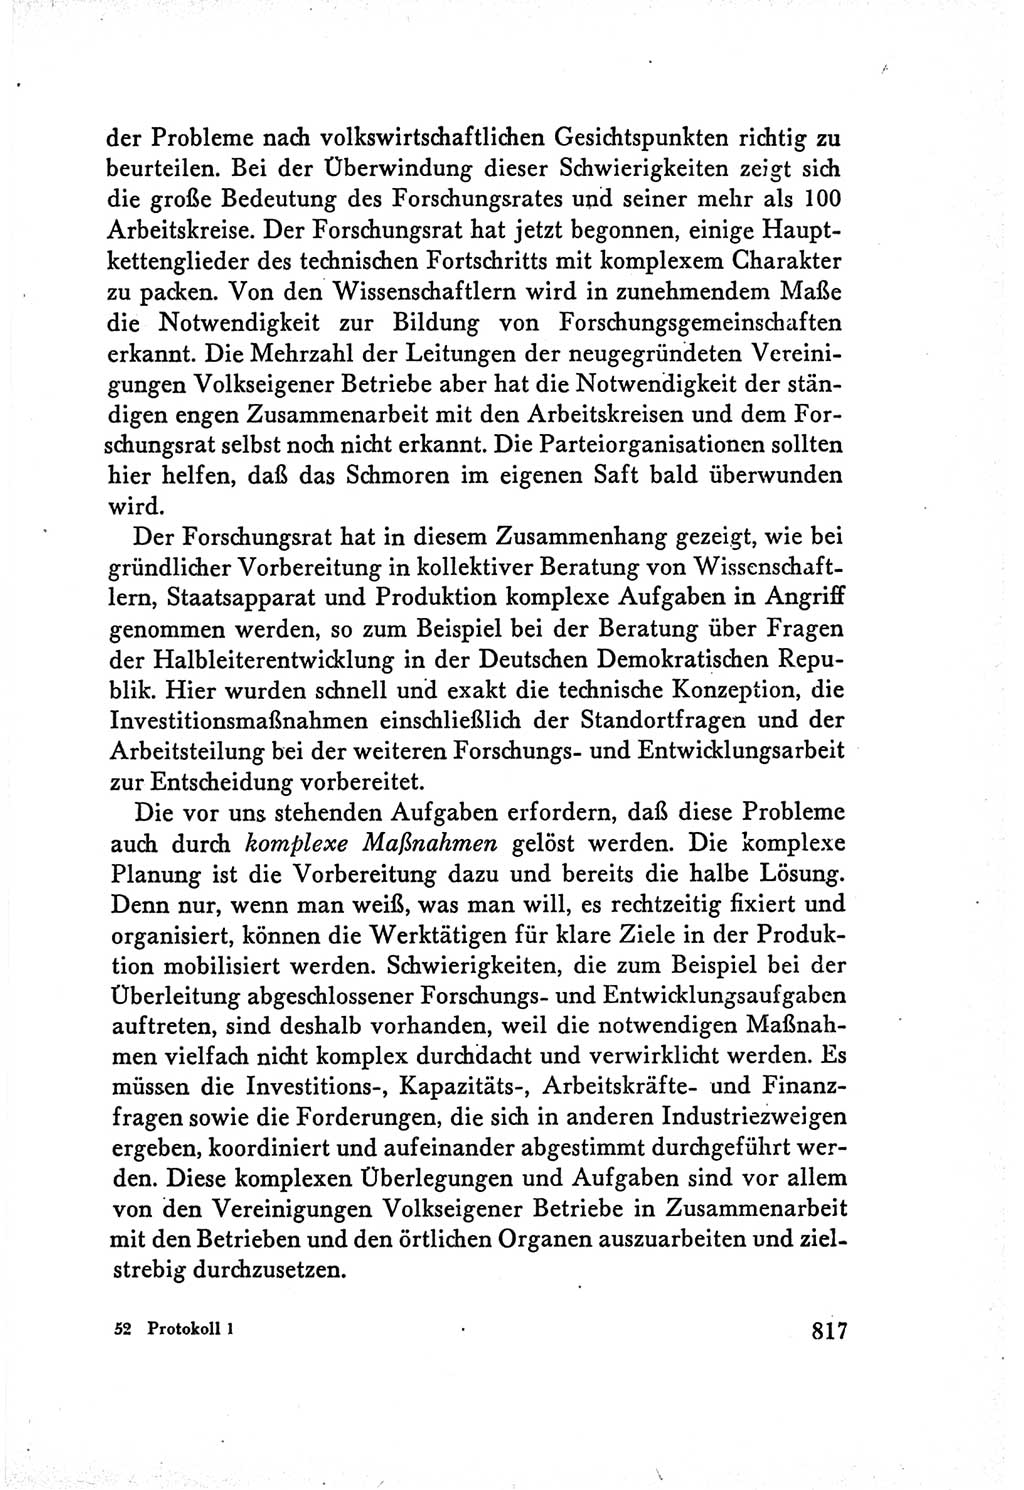 Protokoll der Verhandlungen des Ⅴ. Parteitages der Sozialistischen Einheitspartei Deutschlands (SED) [Deutsche Demokratische Republik (DDR)] 1958, Seite 817